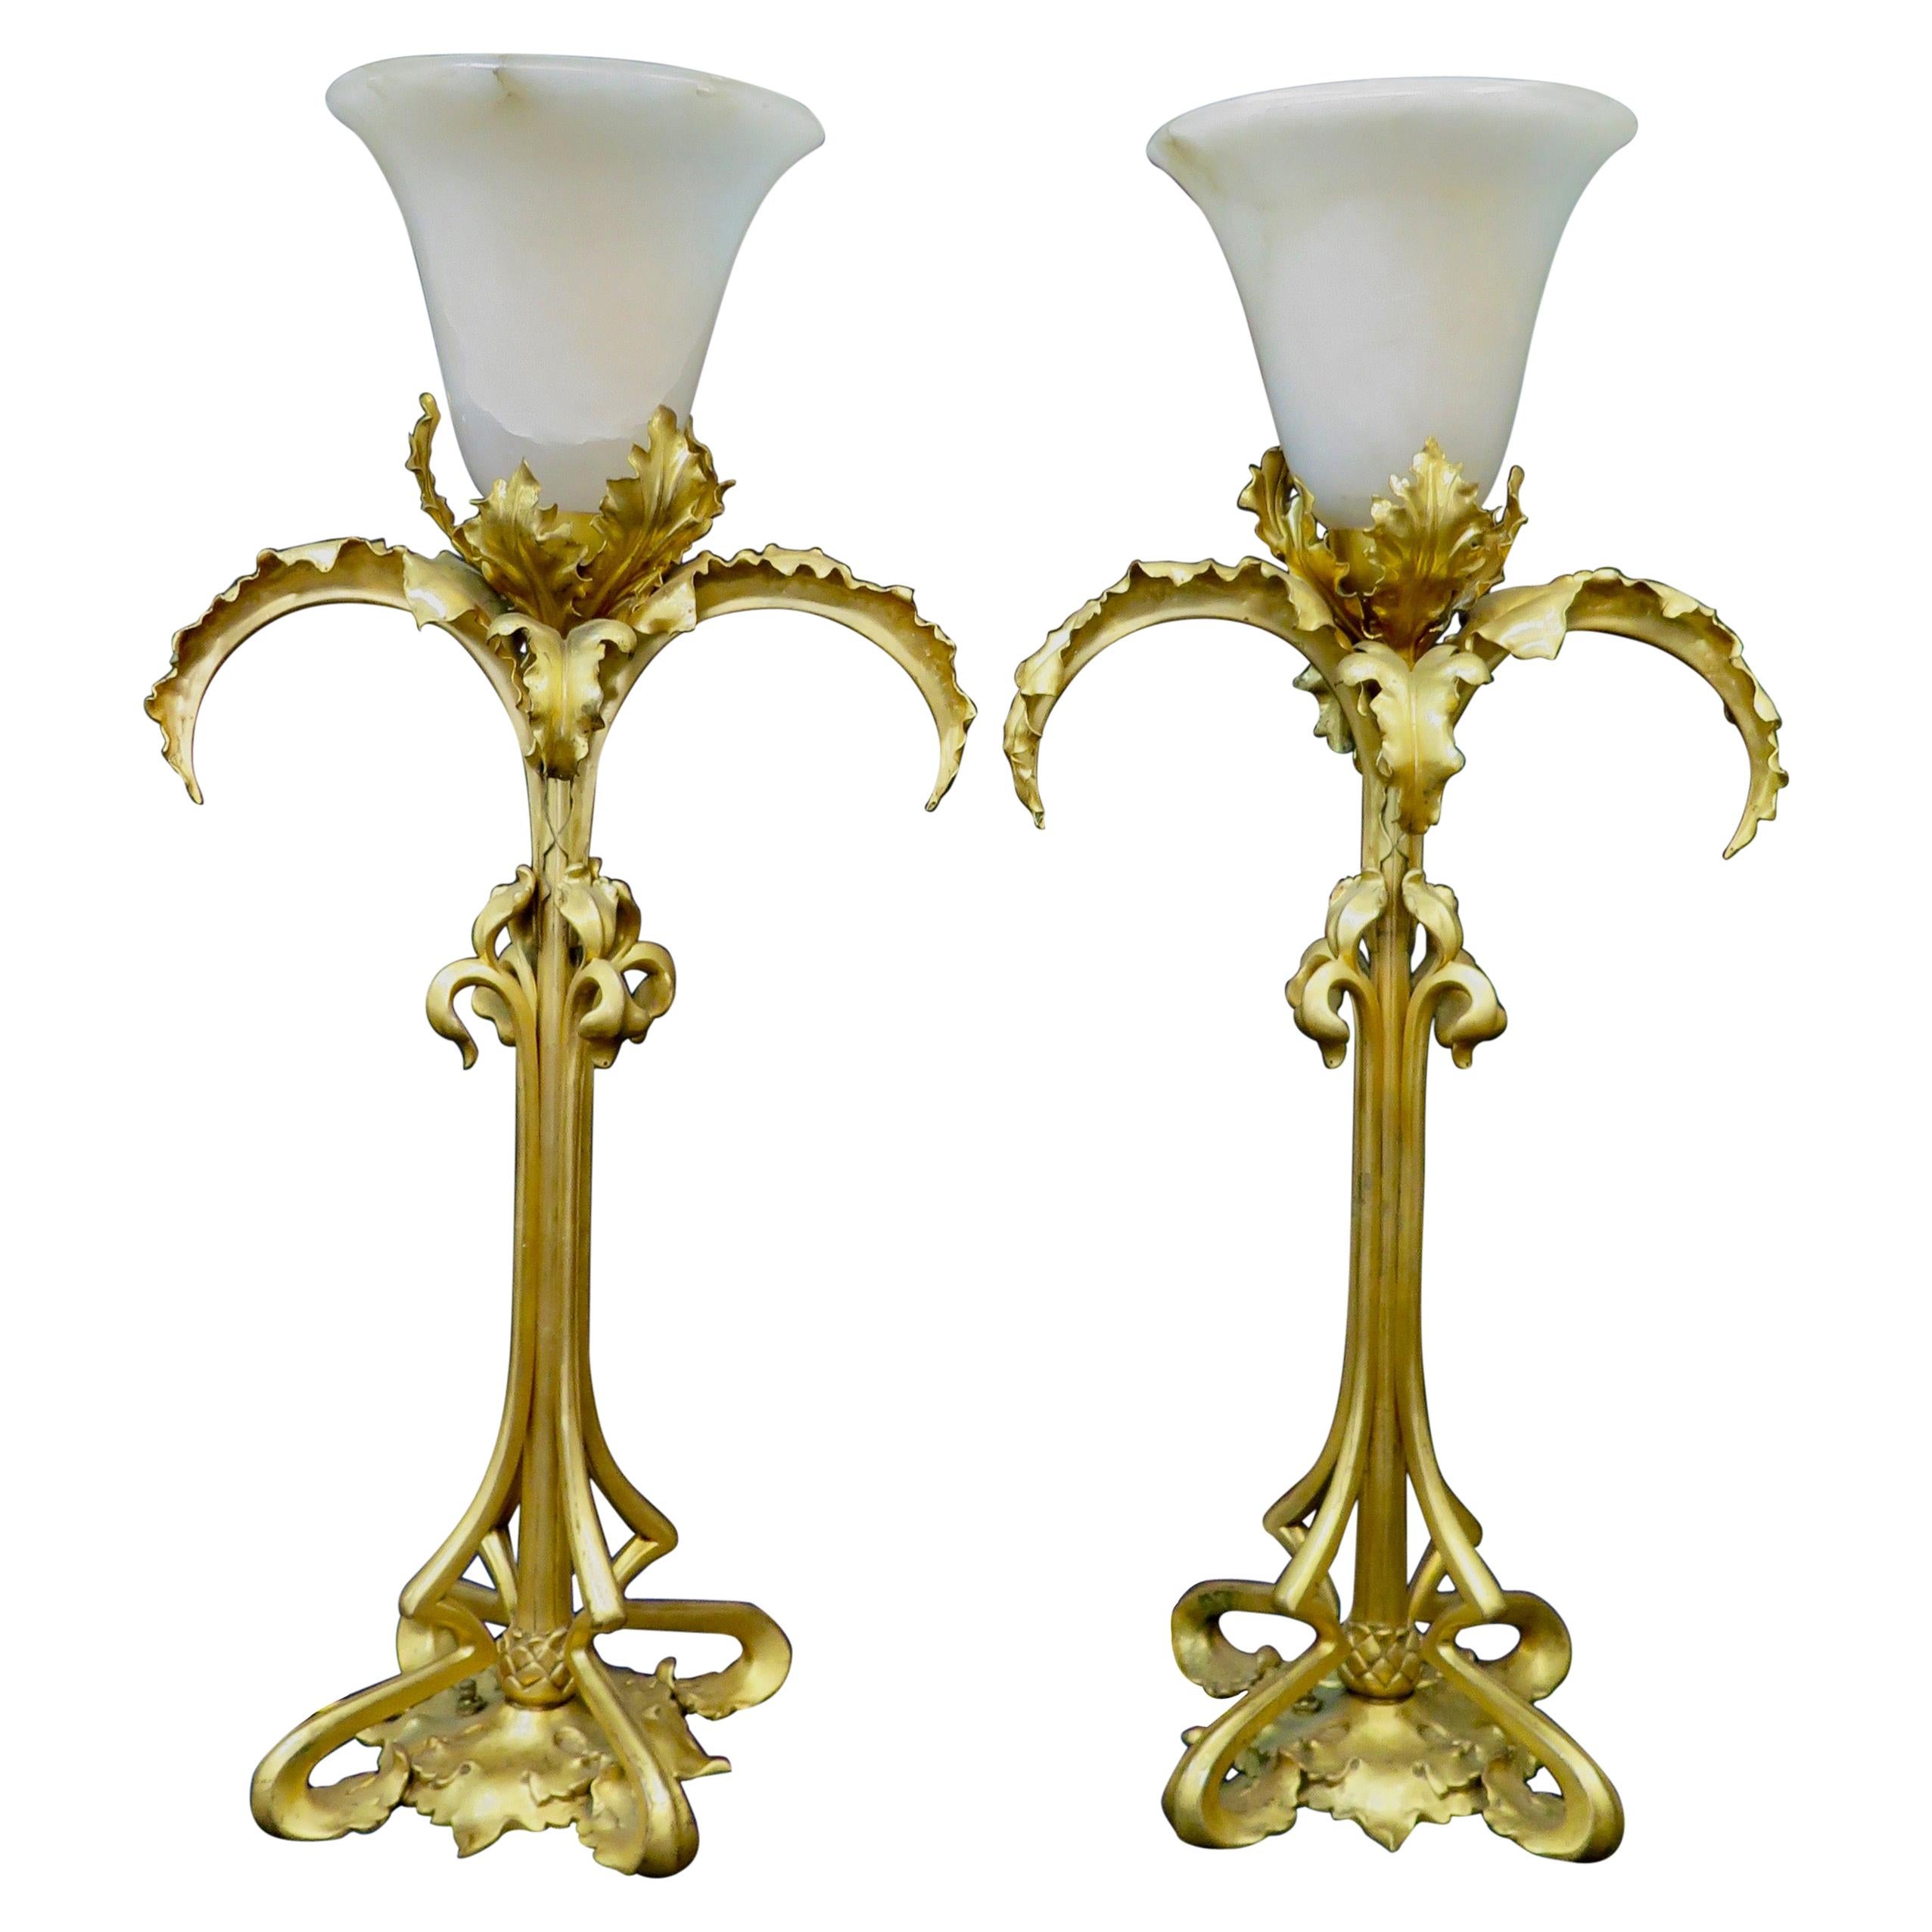 Vintage Doré Bronze and Alabaster Art Nouveau Period Lamps Pair For Sale